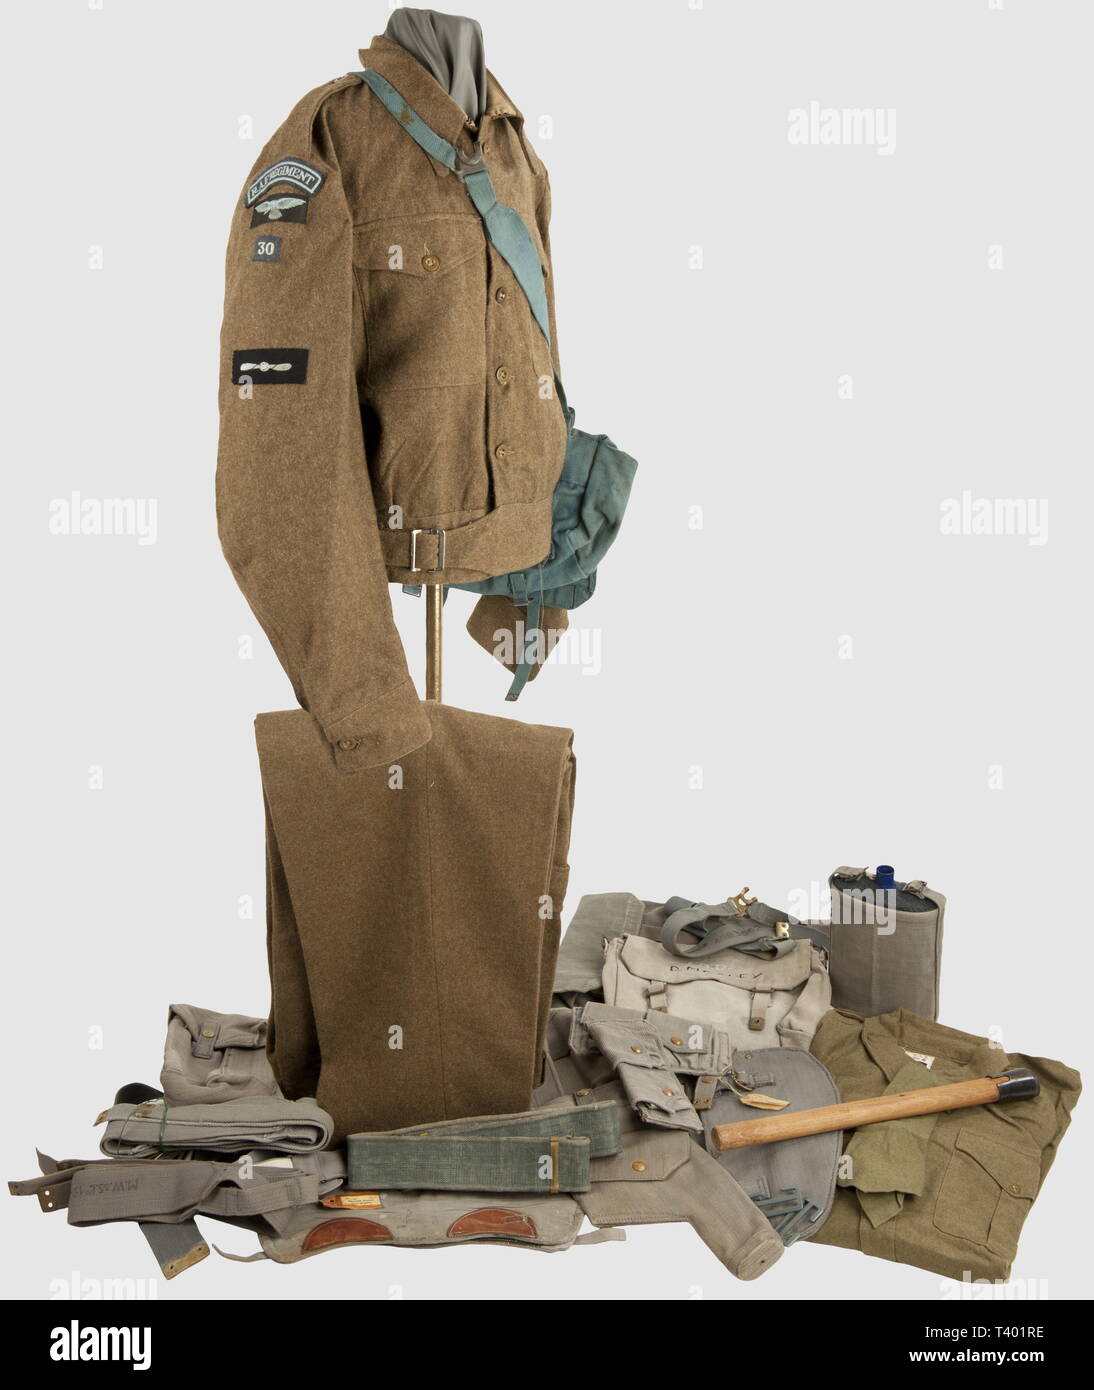 ARMEES ALLIEES 1939-1945, Soldat/Officier de la Royal Air Force, Veste BD 44, daté pantalon assorti belge, chemise et cravate flanelle kaki, ceinturon, paire de bolsas (42), de bretelles paires X- (2) paires et L-bandas (41-42), el porte-baio, web outil individuel daté 42 (manche 44) dans étui après-guerre, paire de guêtrons (cuirs de renfort noirs et fauves) et havresac web bidon émaillé bleu avec étui, masque à gaz dans son respectivement datés sac (43 et 41, no illustrés), paire d'aiguillettes web (42?), paire de bretelles élastiques de pantalon , Additional-Rights-Clearance-Info-Not-Available Foto de stock